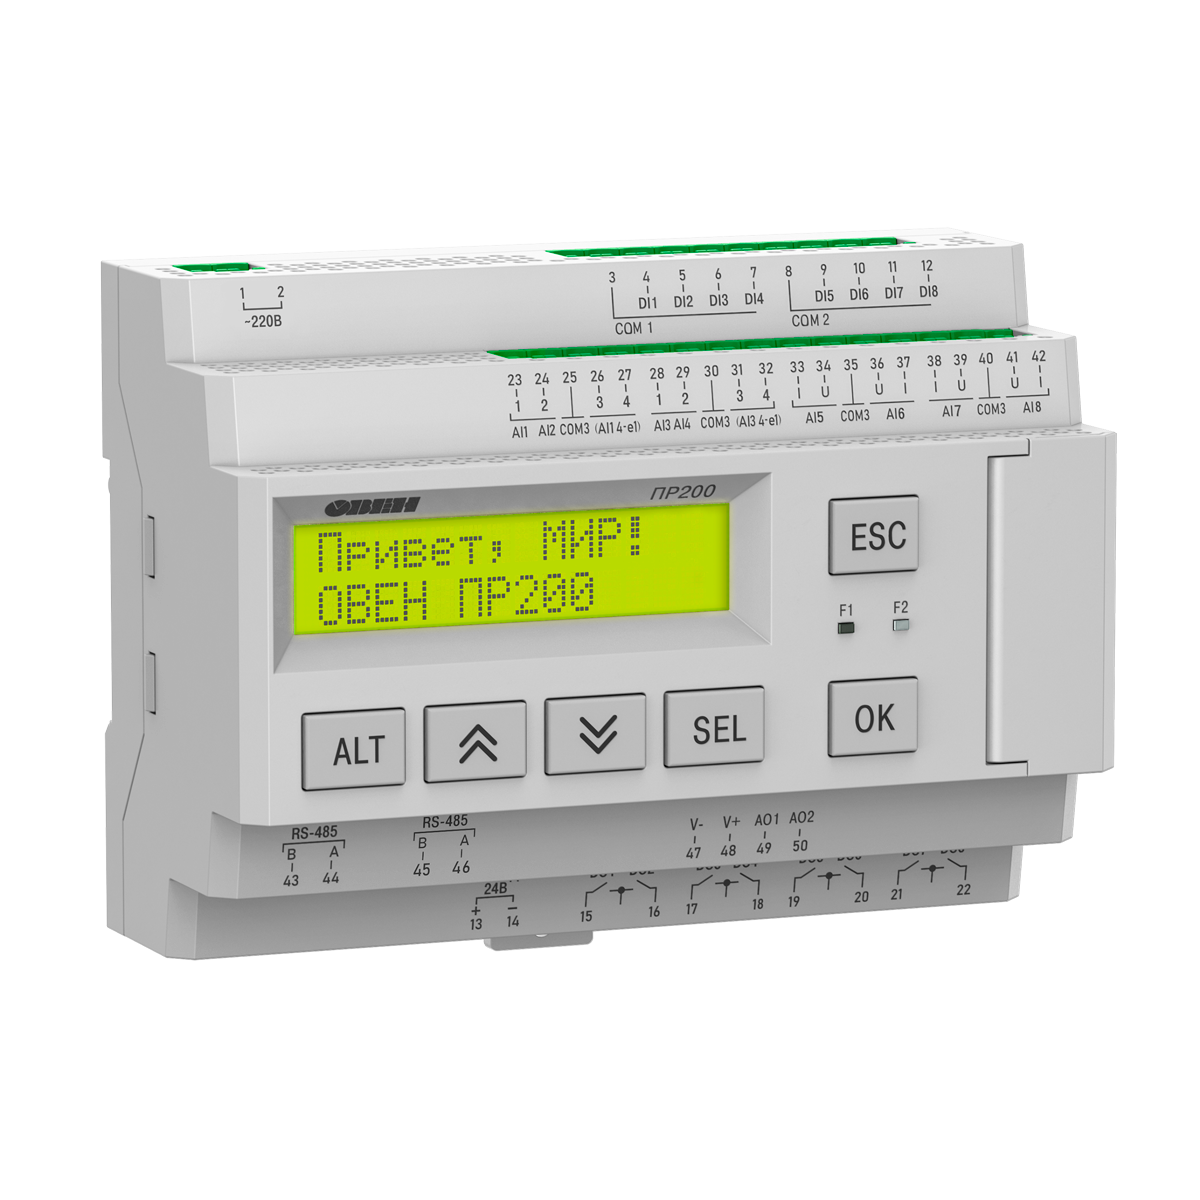 ПР200-х8 специализированная модификация ПР200 для автоматизации систем обратного осмоса  и контроля уровня жидкости